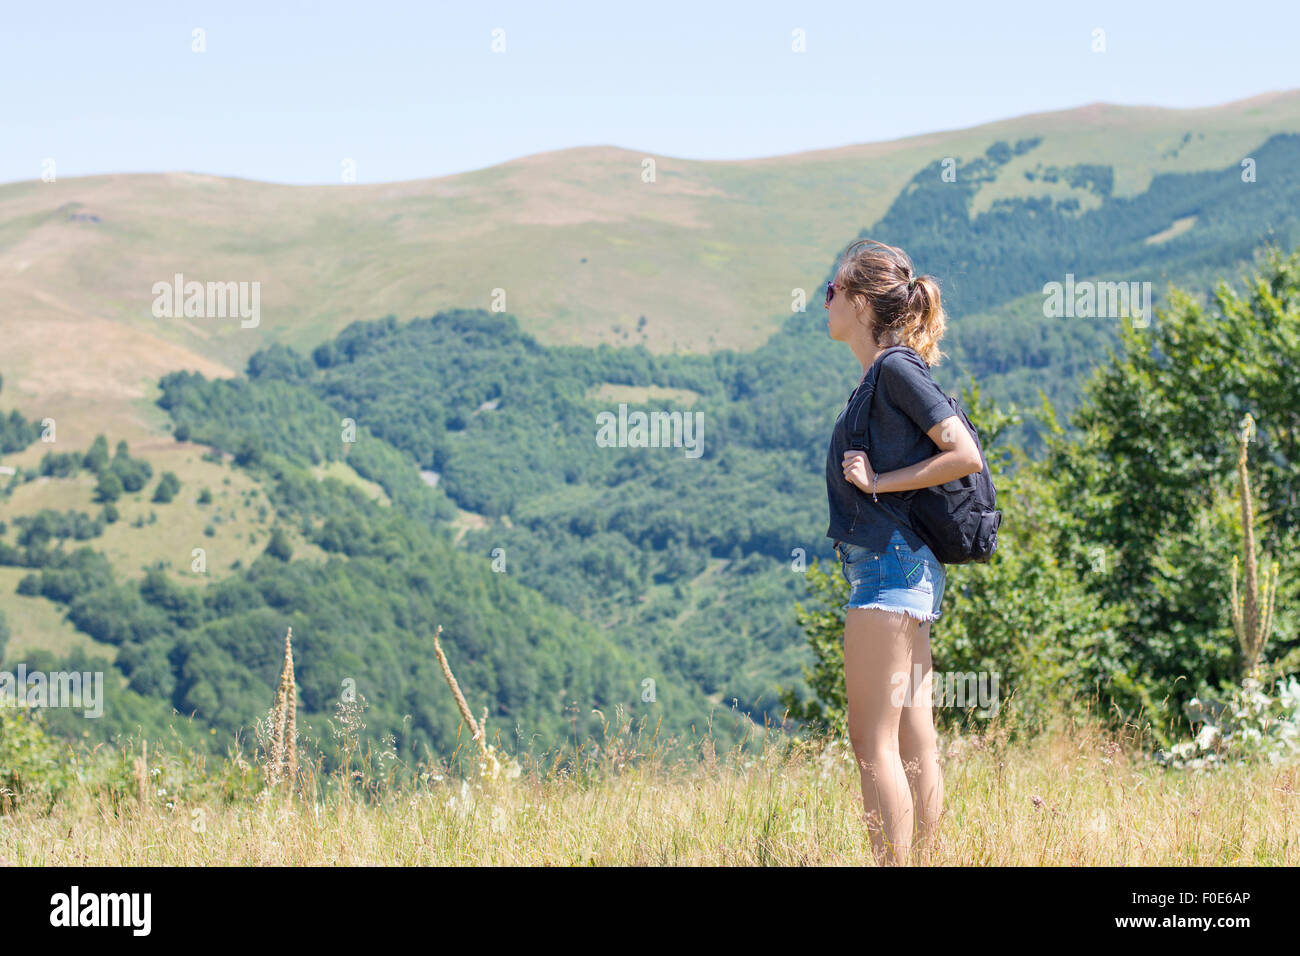 Giovane e bella ragazza con uno zaino sulla schiena, in piedi sul plateau. Il verde dei prati e montagne maestose in backgrou Foto Stock